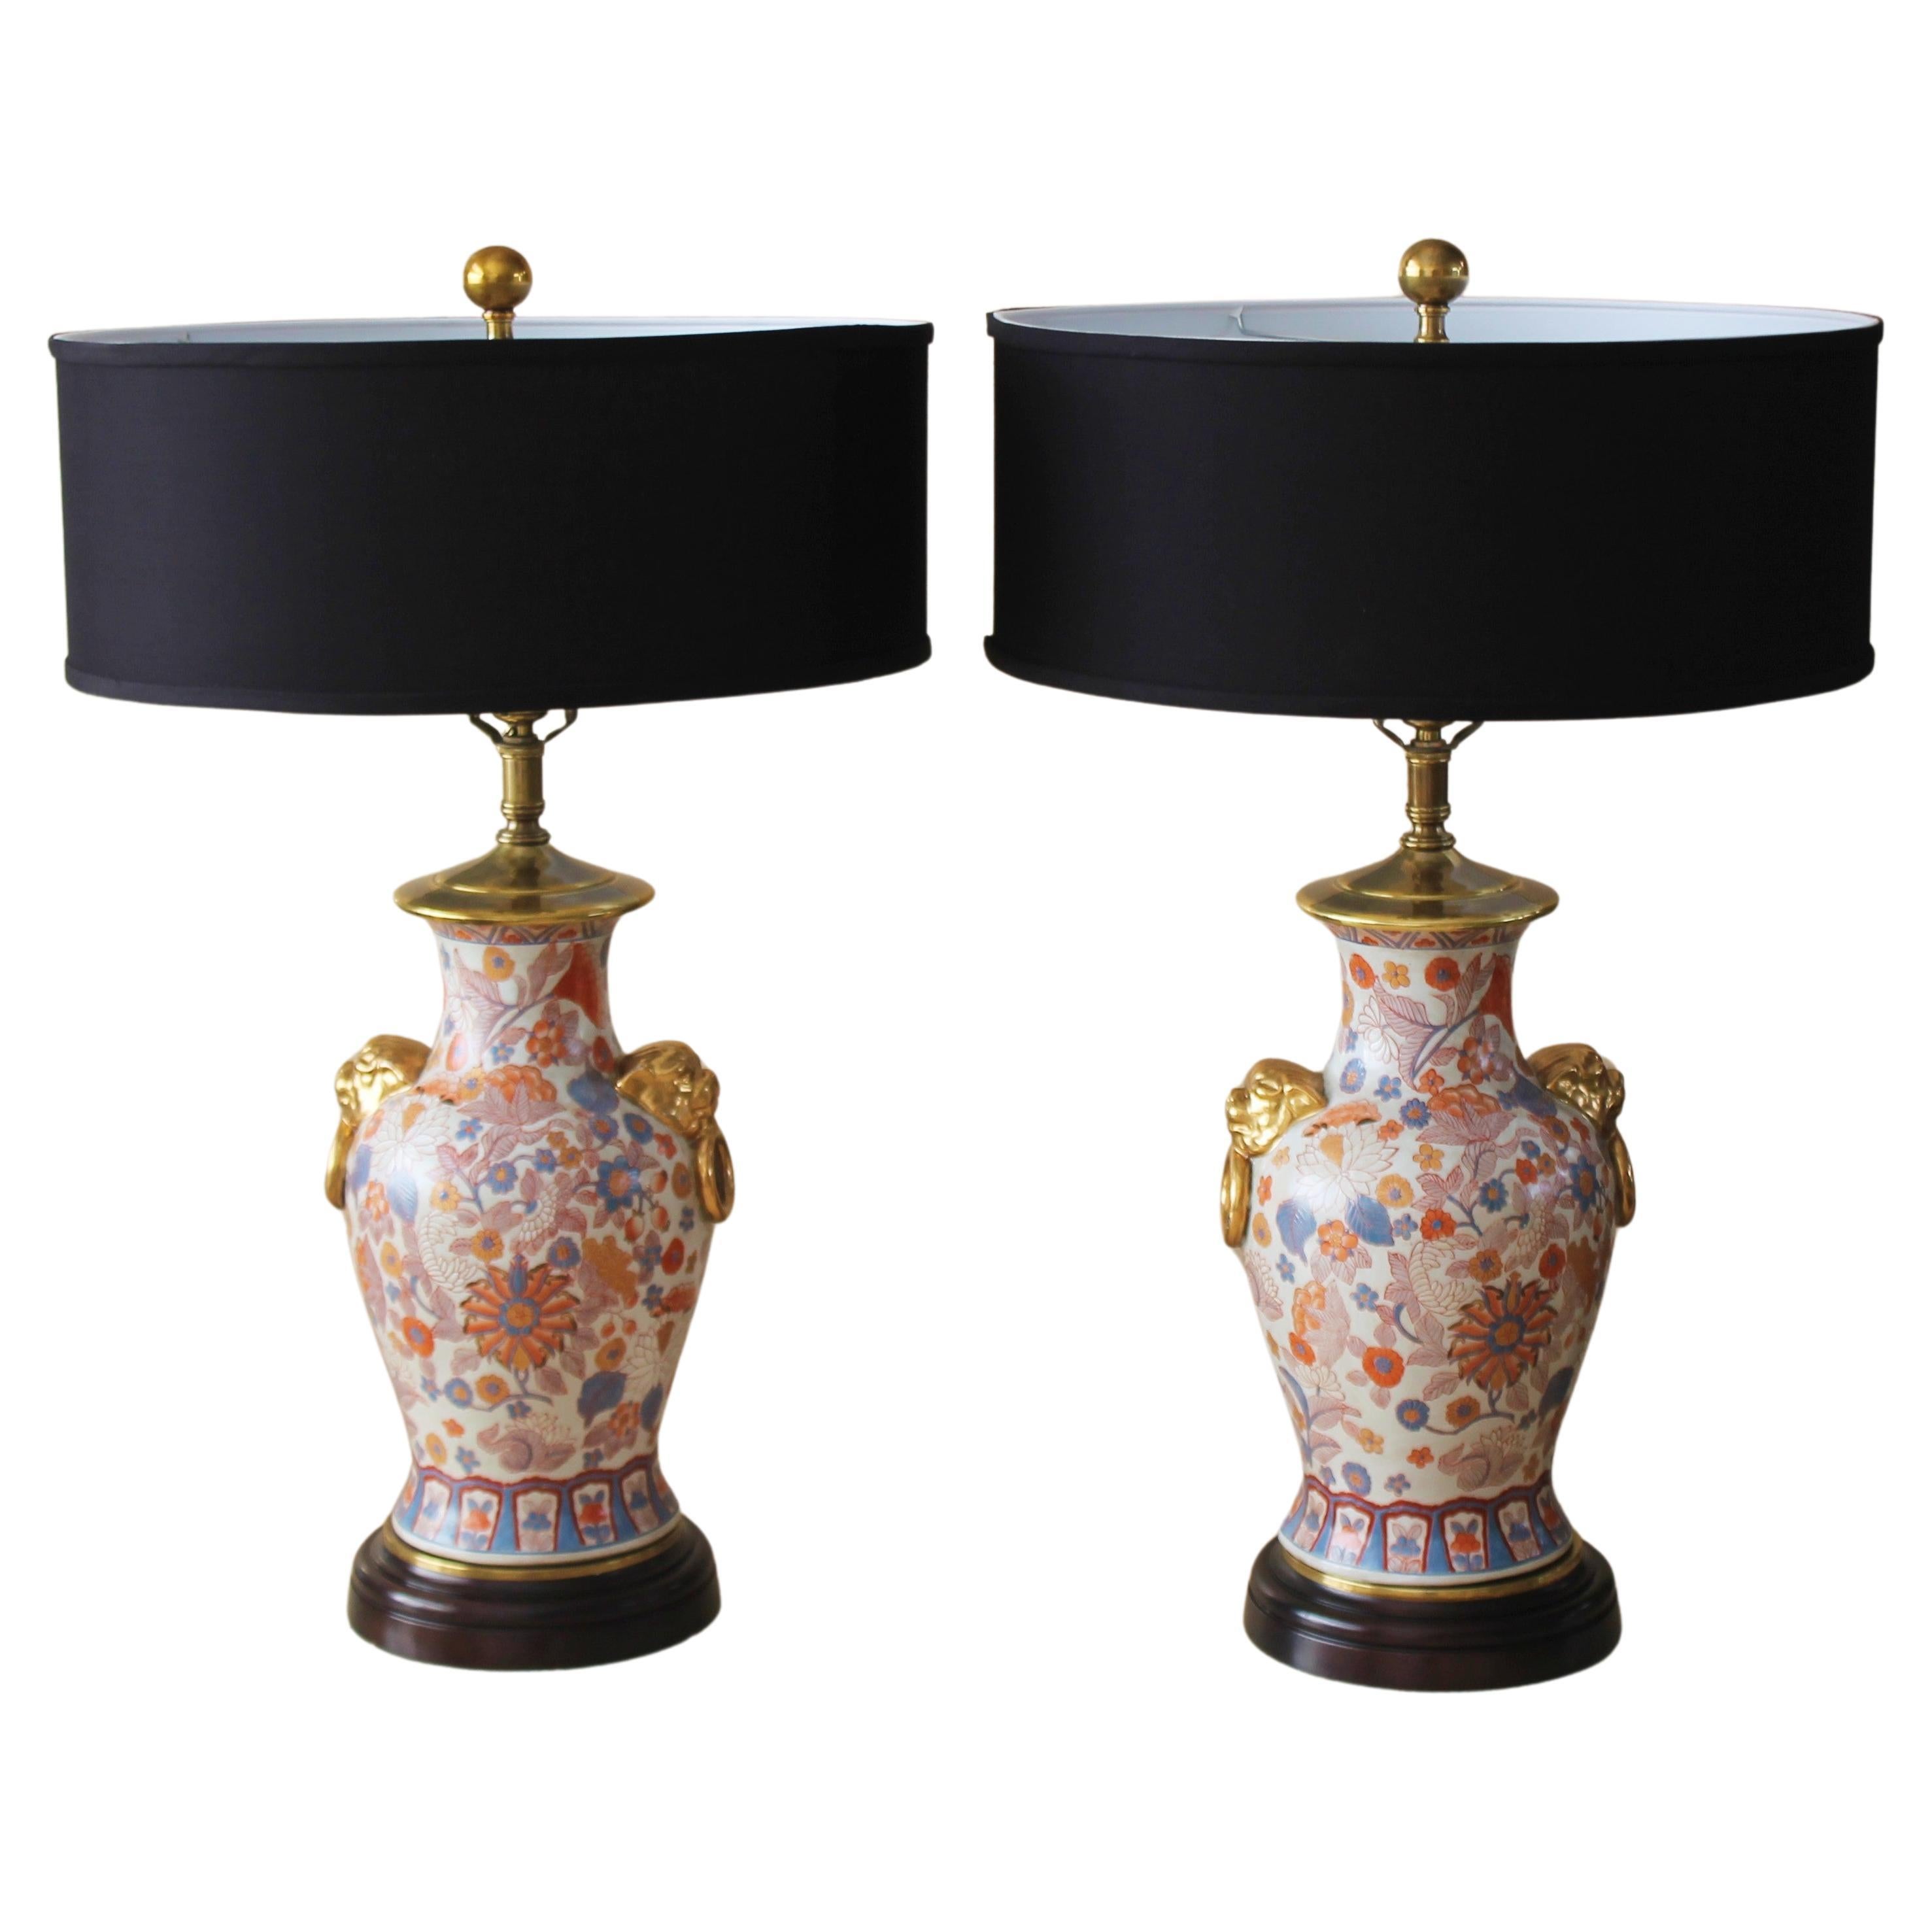 Exquisites Paar! Frederick Cooper Chinoiserie-Tischlampen aus Goldbronze! Messing mit Porzellan